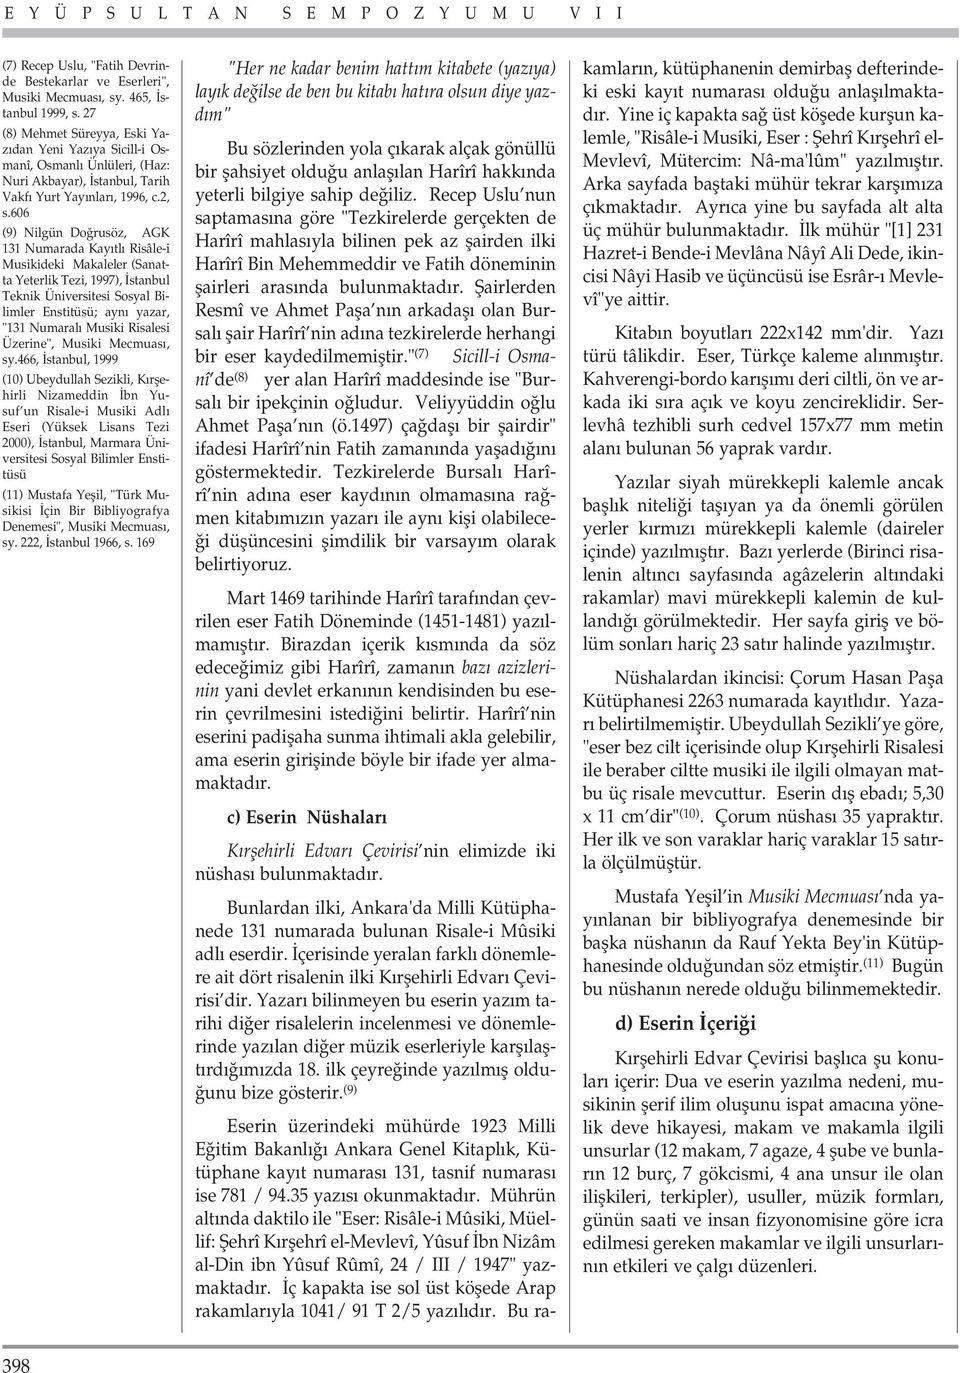 606 (9) Nilgün Do rusöz, AGK 131 Numarada Kay tl Risâle-i Musikideki Makaleler (Sanatta Yeterlik Tezi, 1997), stanbul Teknik Üniversitesi Sosyal Bilimler Enstitüsü; ayn yazar, "131 Numaral Musiki